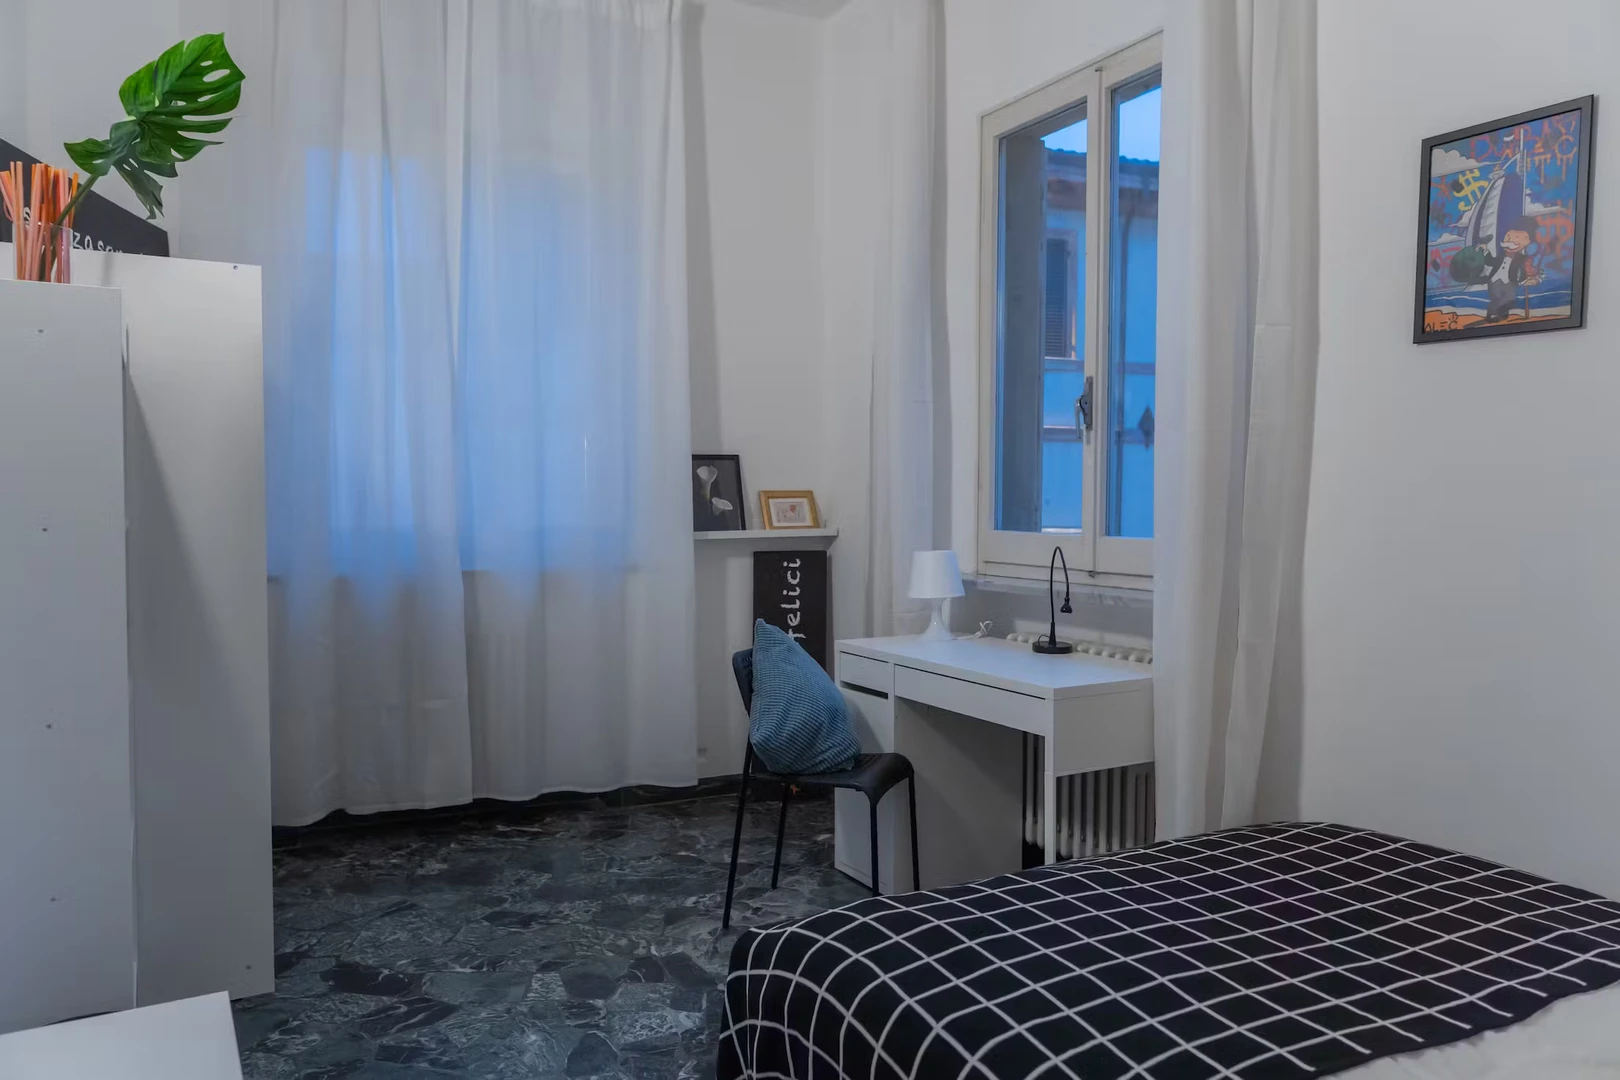 Rimini de çift kişilik yataklı kiralık oda